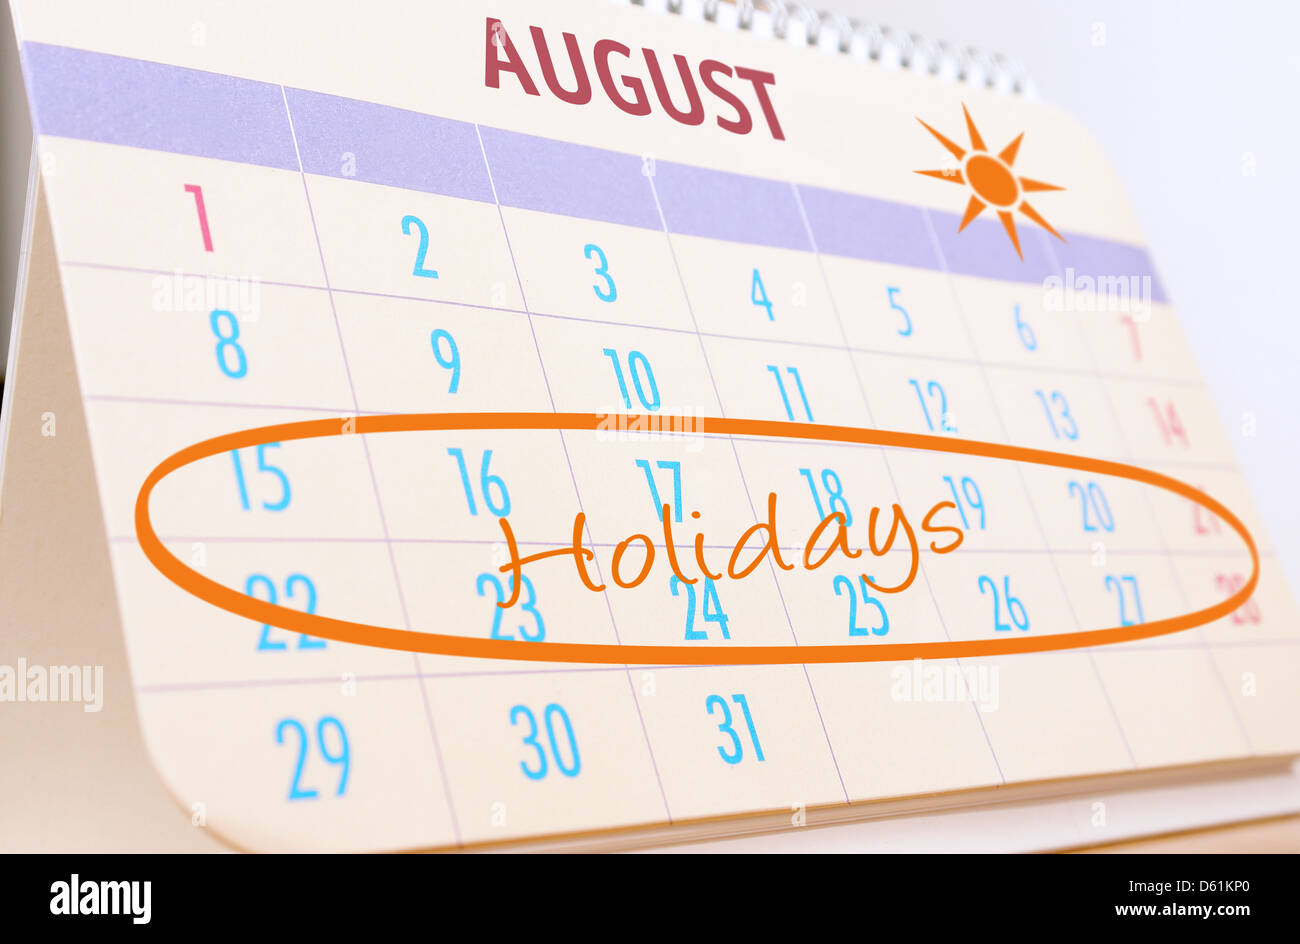 Calendrier de Bureau montrant août mois avec les vacances d'été prévues en surbrillance Banque D'Images